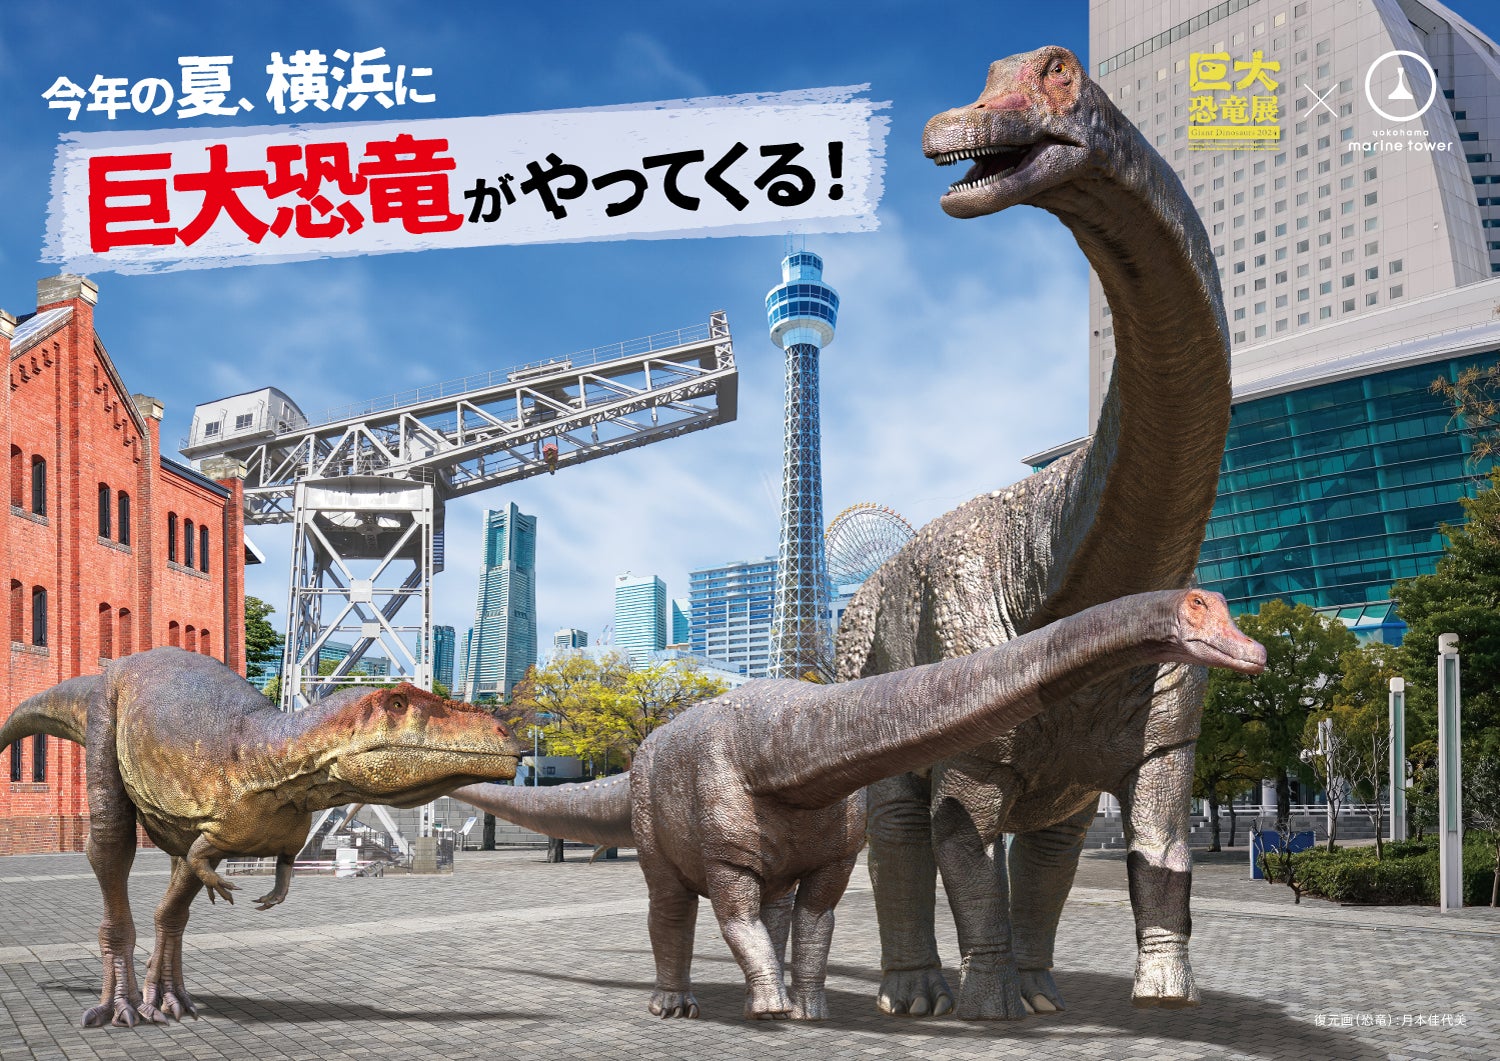 横浜ベイエリアを楽しむ、お得な共通チケット販売「巨大恐竜展 × 横浜マリンタワー」近隣施設のクーポン付